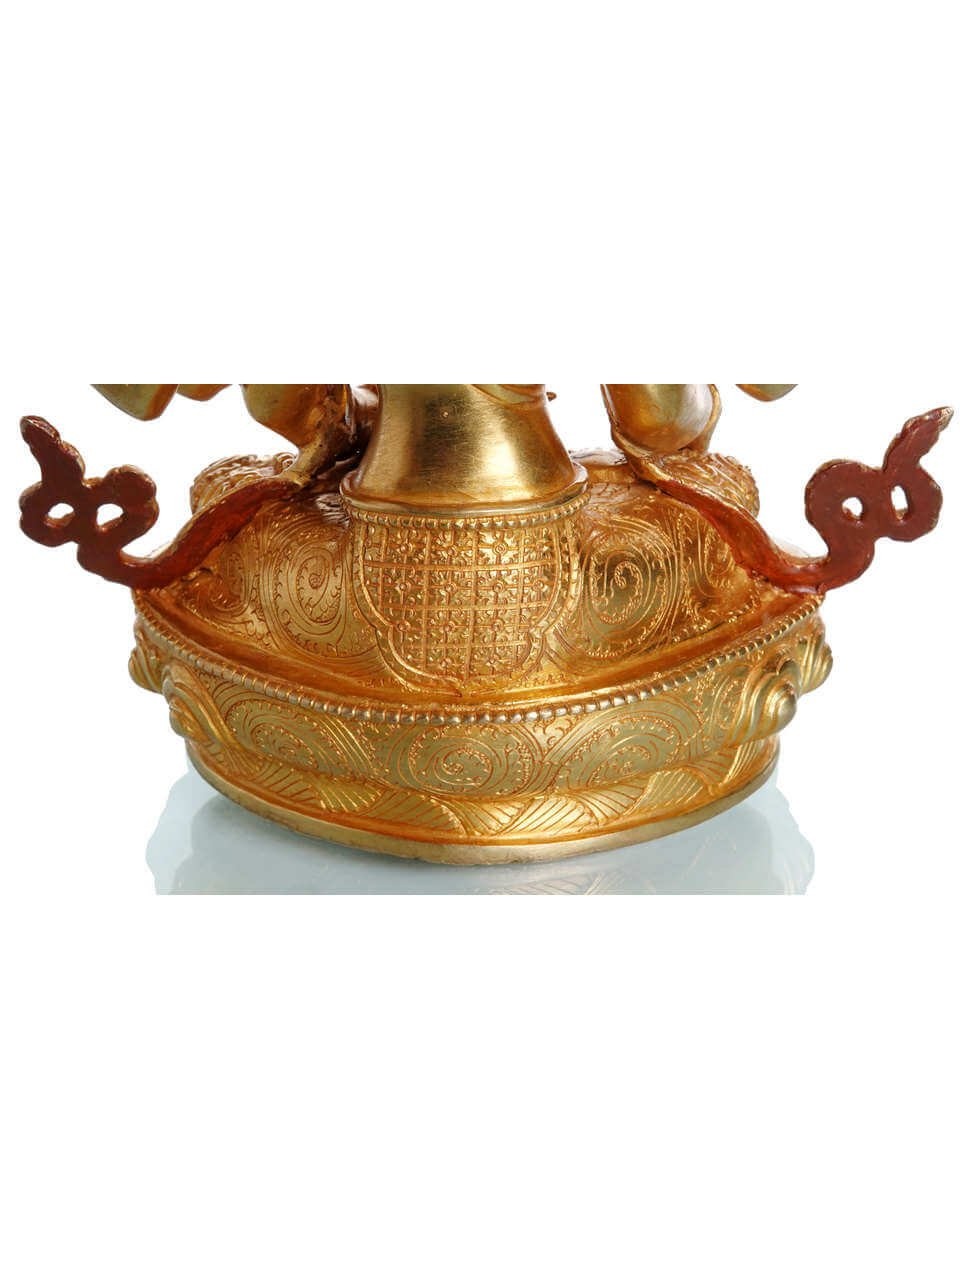 Premiumqualität Namgyalma vollfeuervergoldet kaufen Statue cm 24